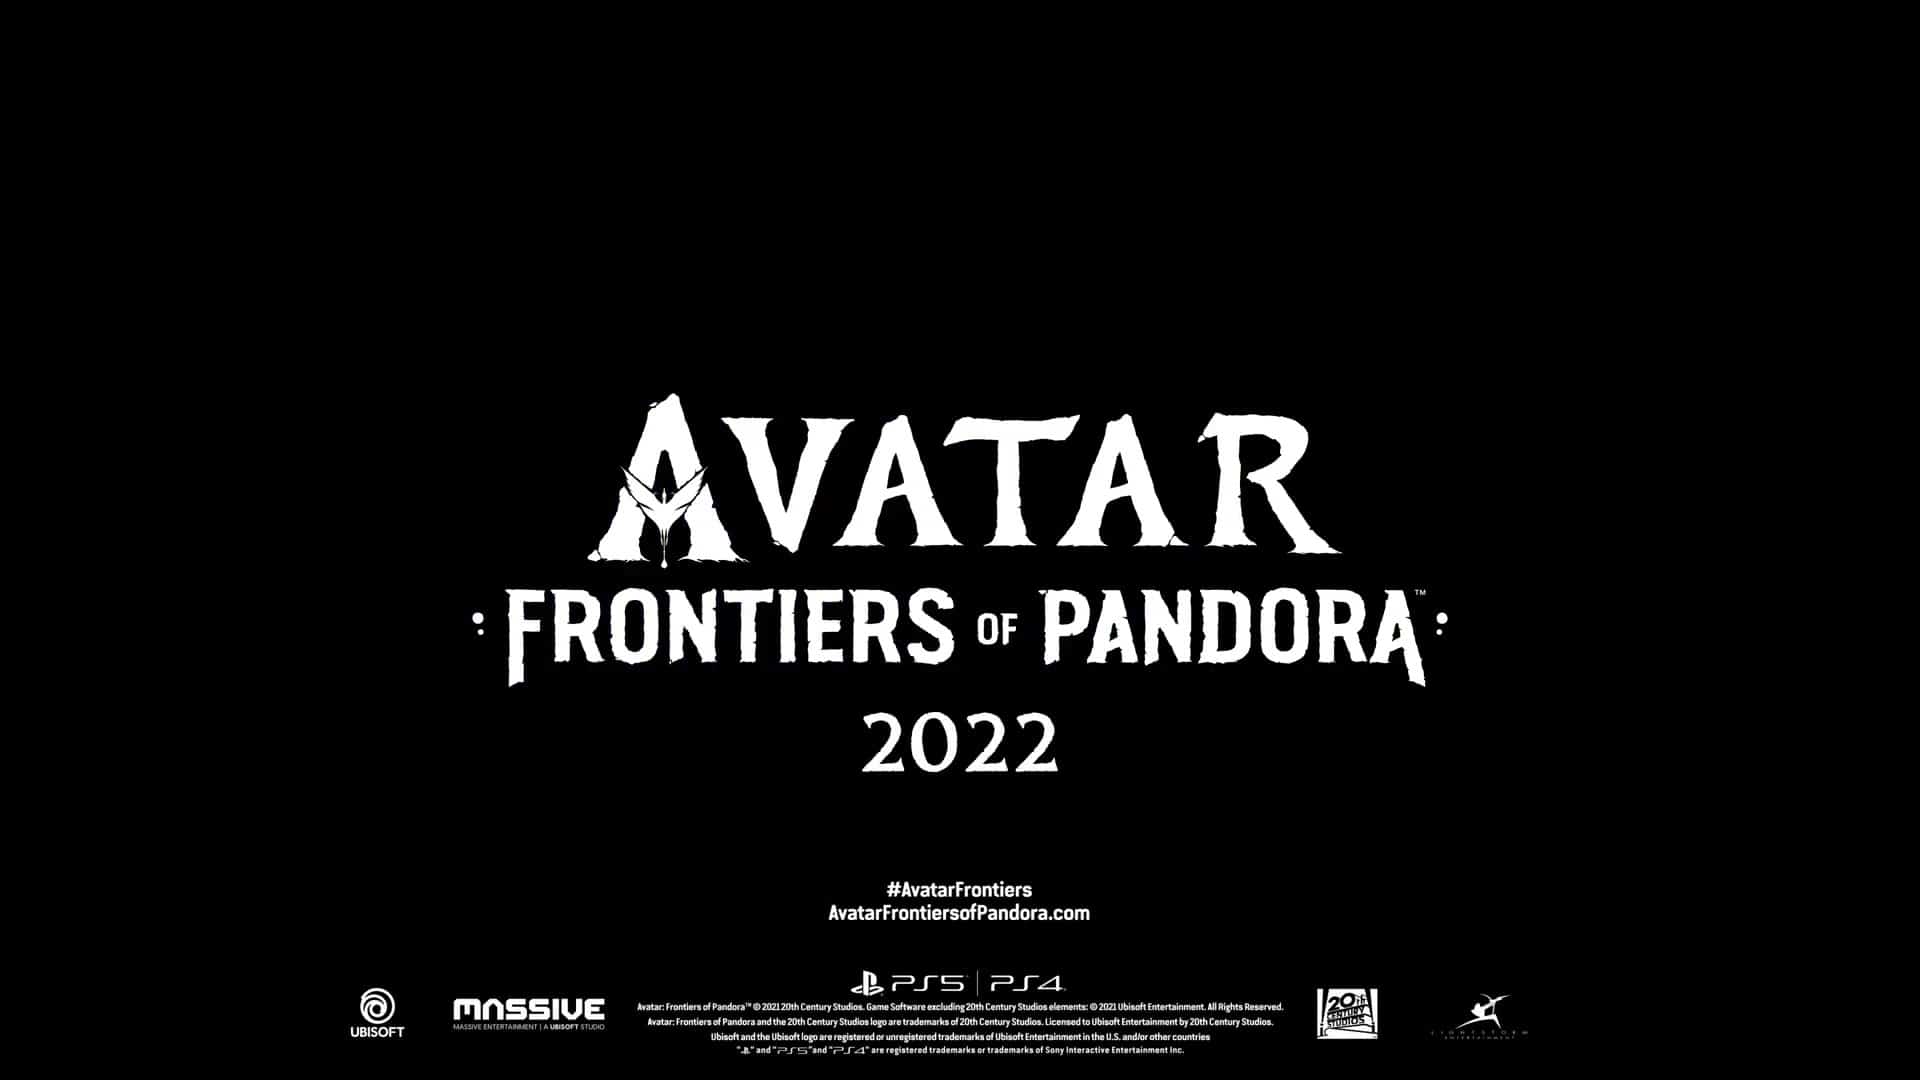 Imagem da logo do jogo do Avatar, Avatar: Frontiers of Pandora